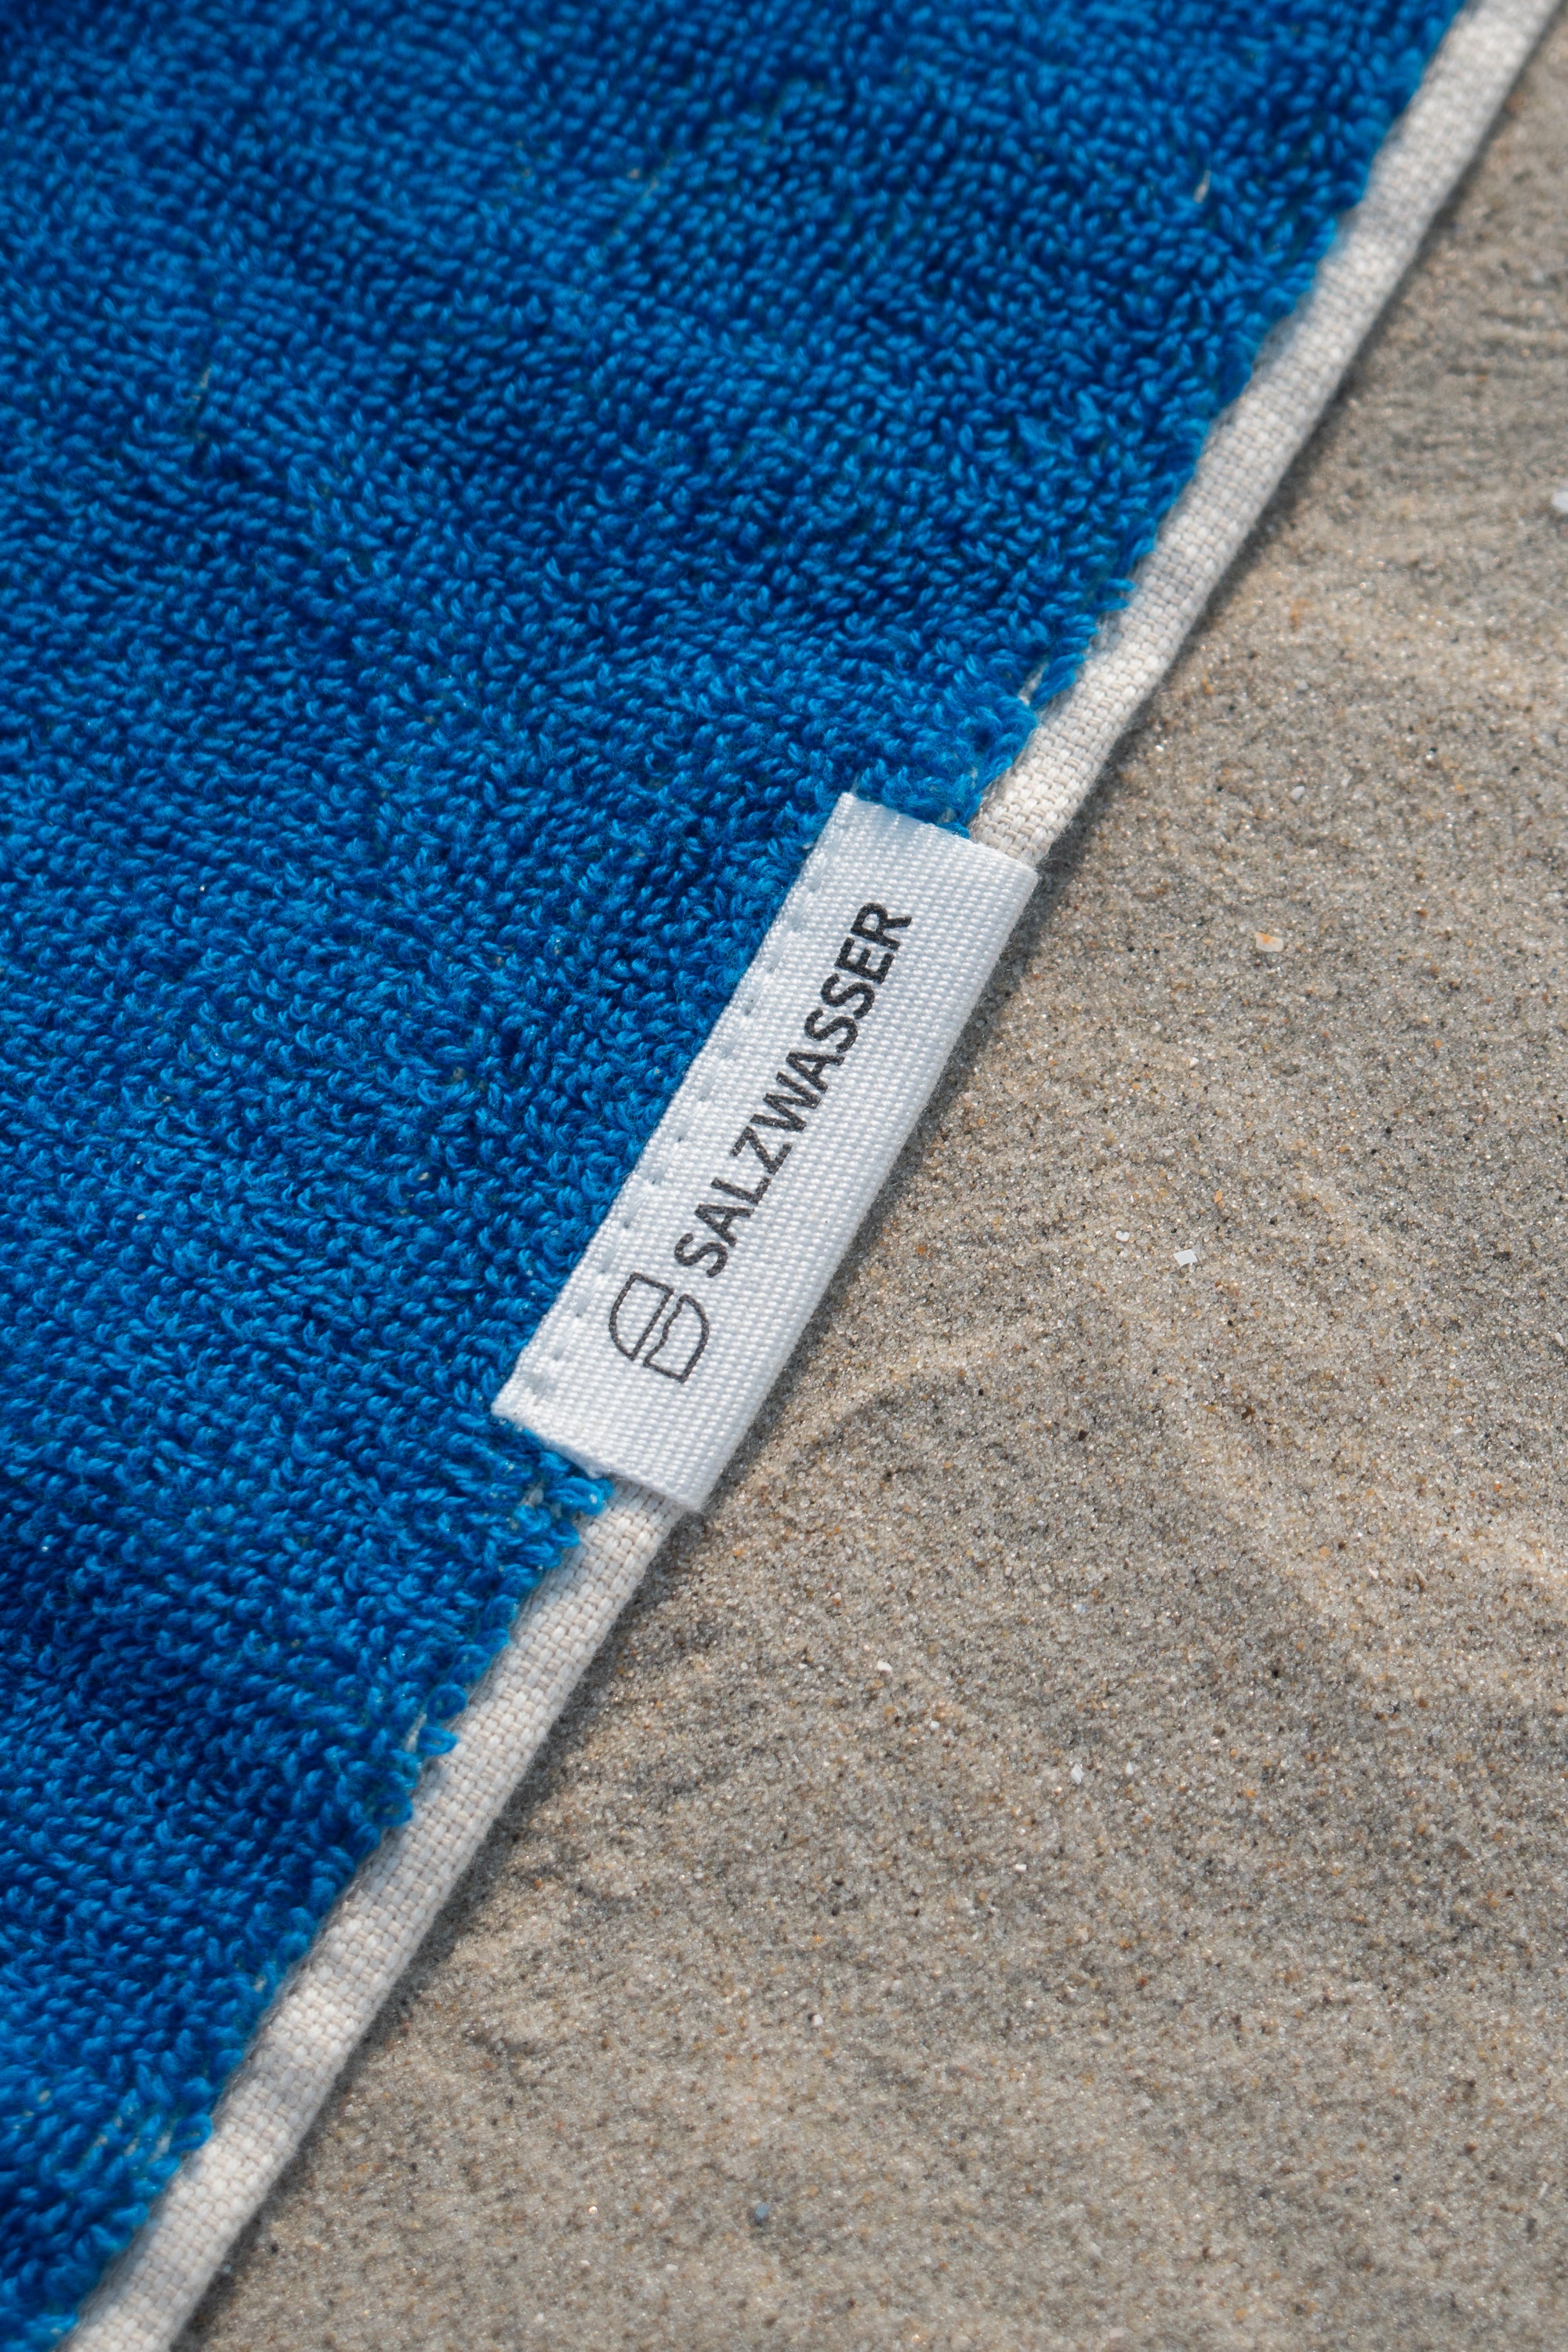 SALZWASSER XXL Badehandtuch für den Strand aus hochwertigem Material